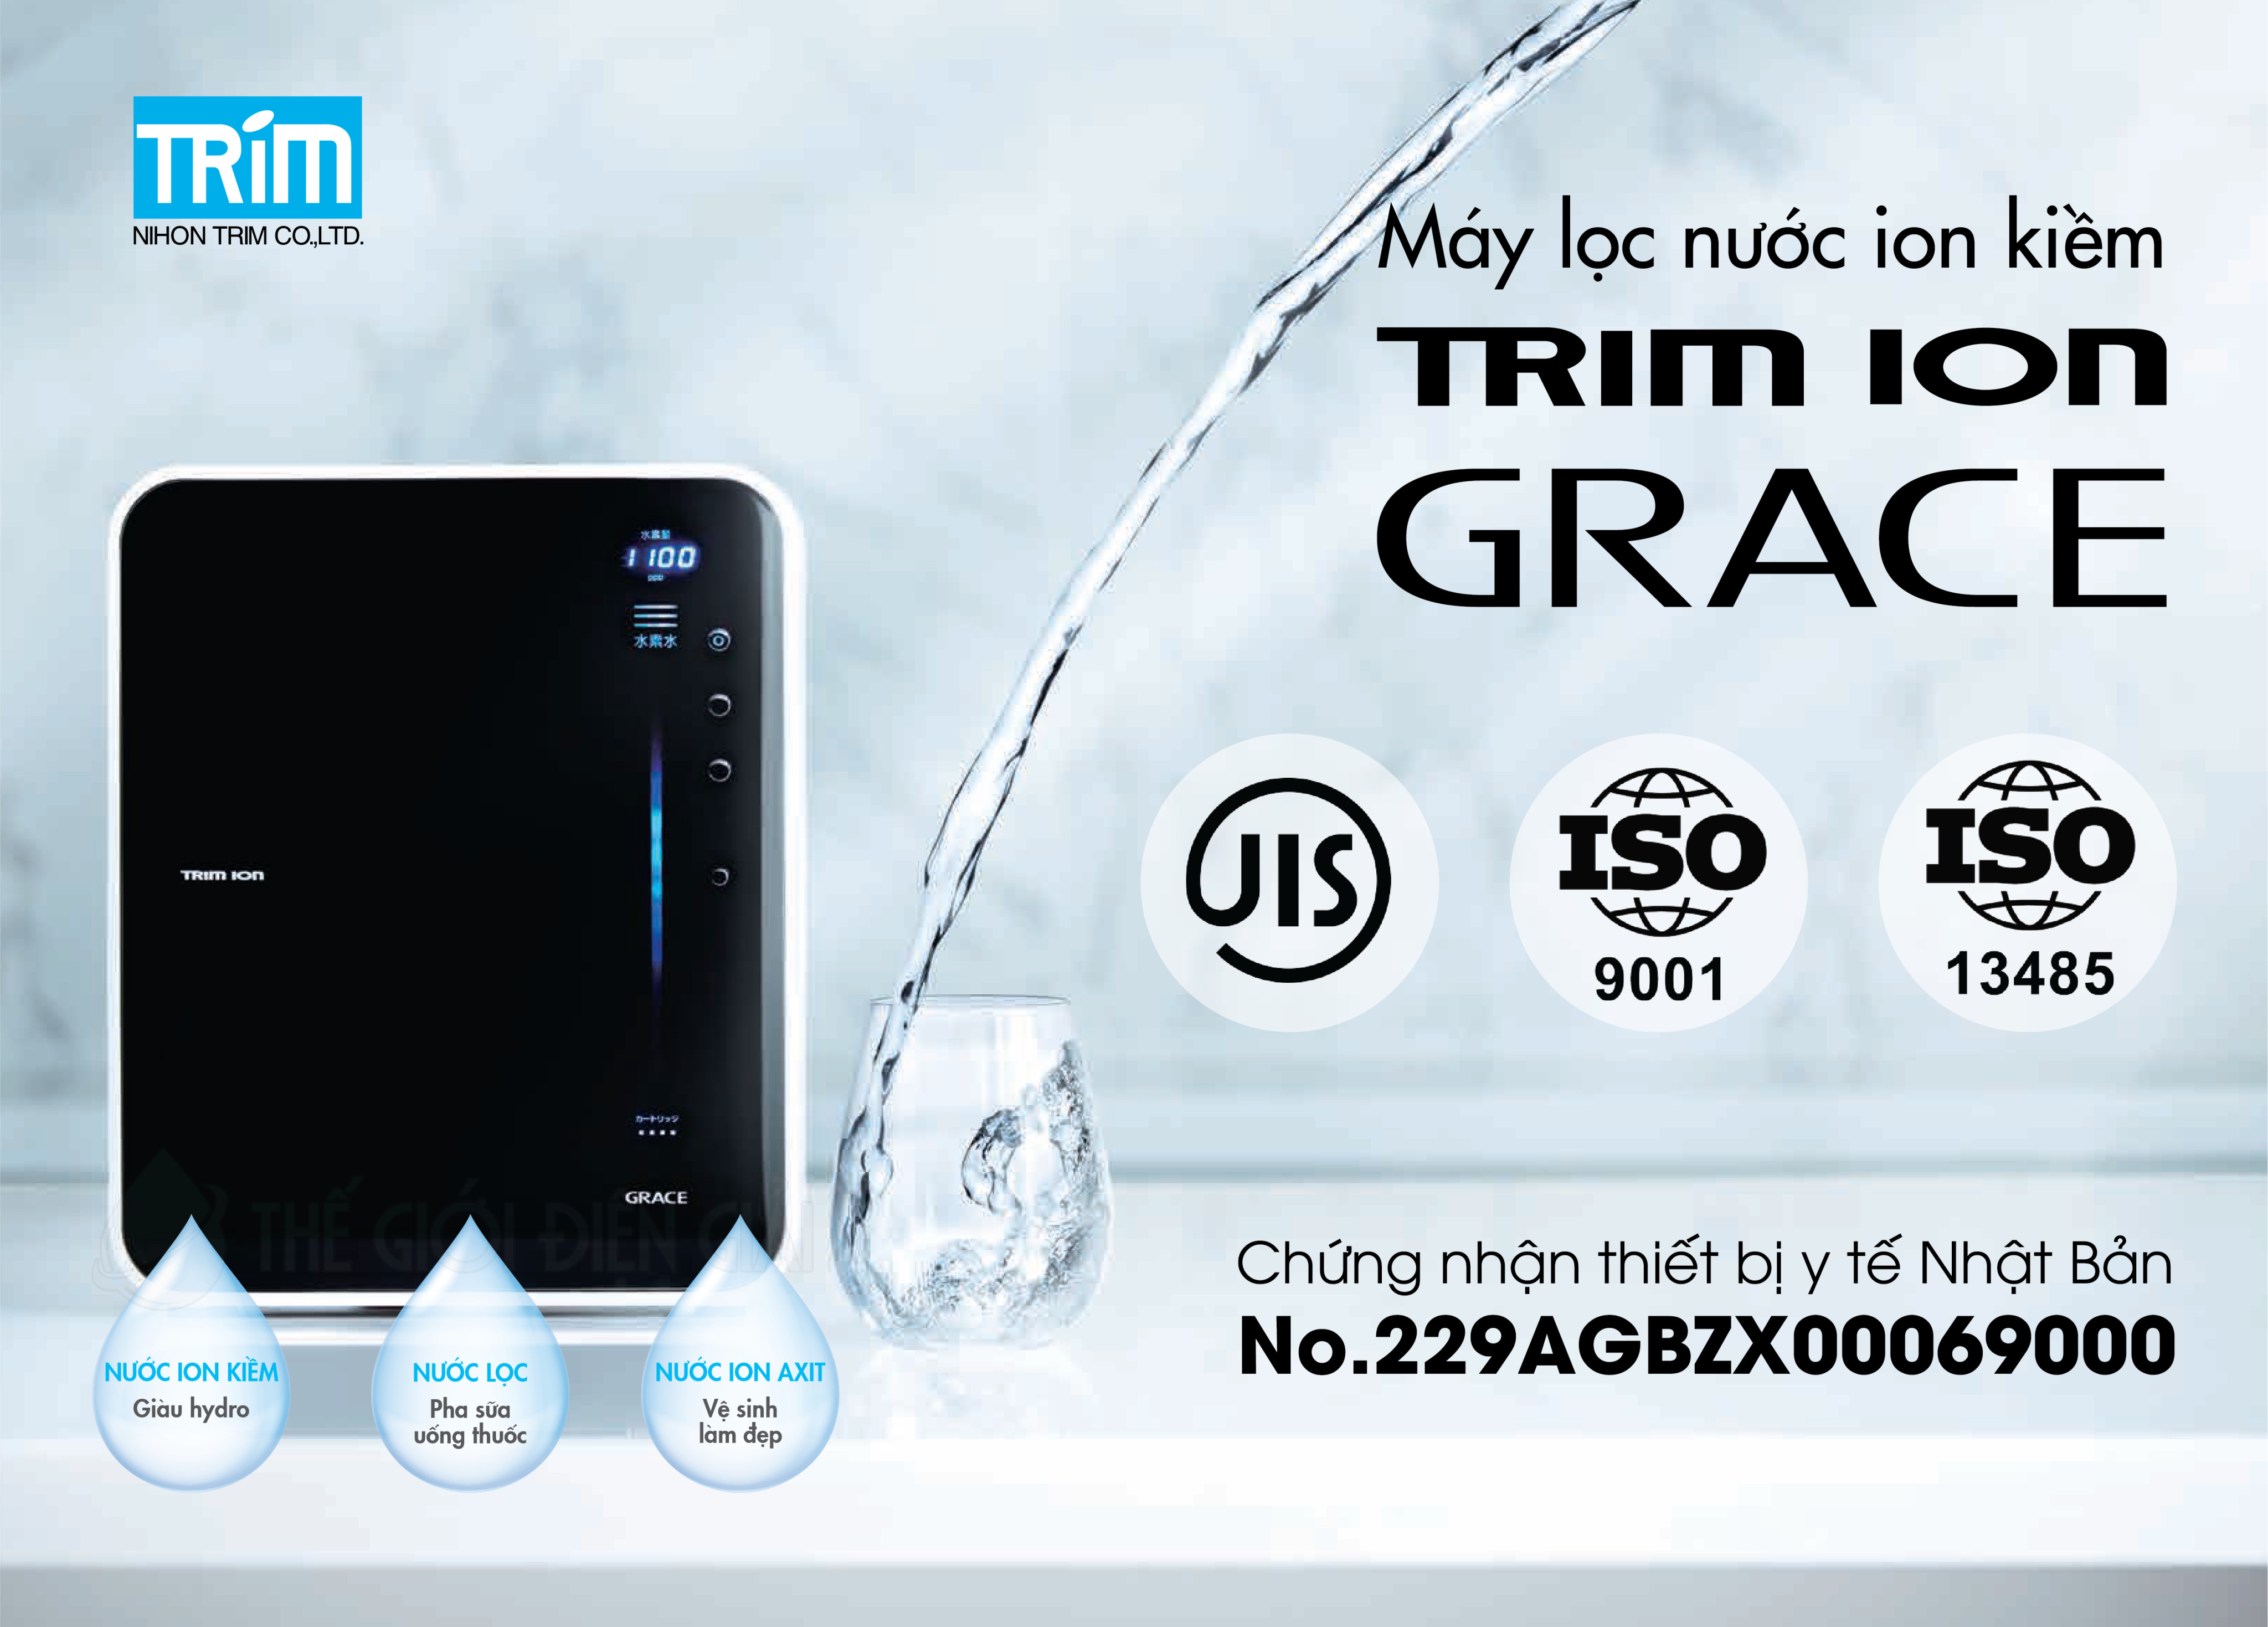 Các chứng nhận chất lượng tiêu biểu của máy lọc nước ion kiềm Trimion Grace